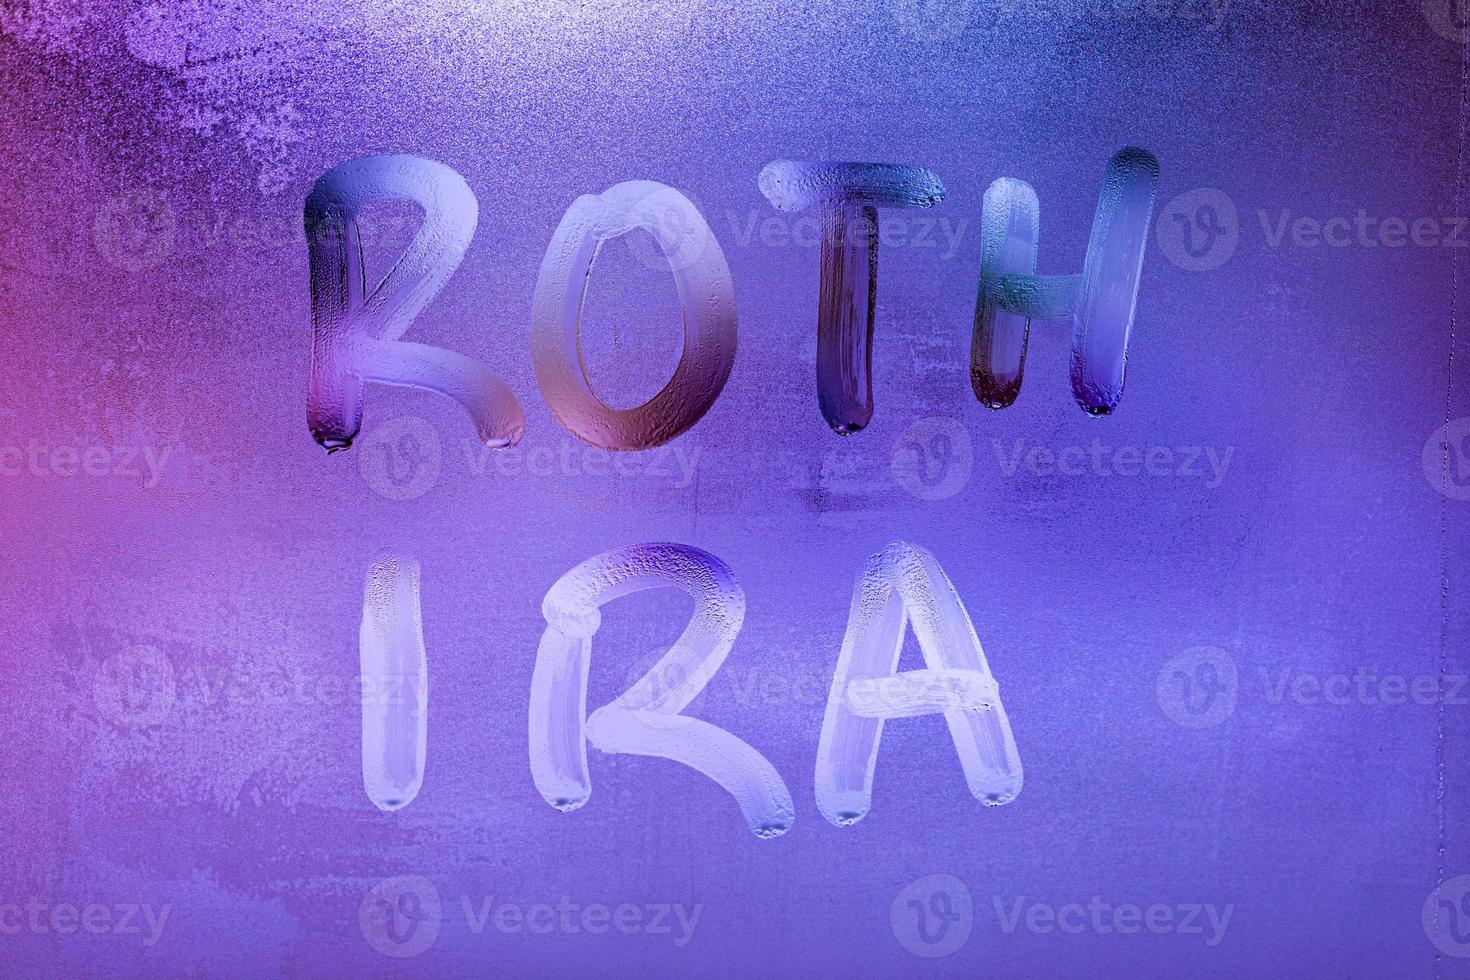 les mots roth ira - compte de retraite individuel - écrit à la main sur la surface en verre de la fenêtre humide de nuit photo